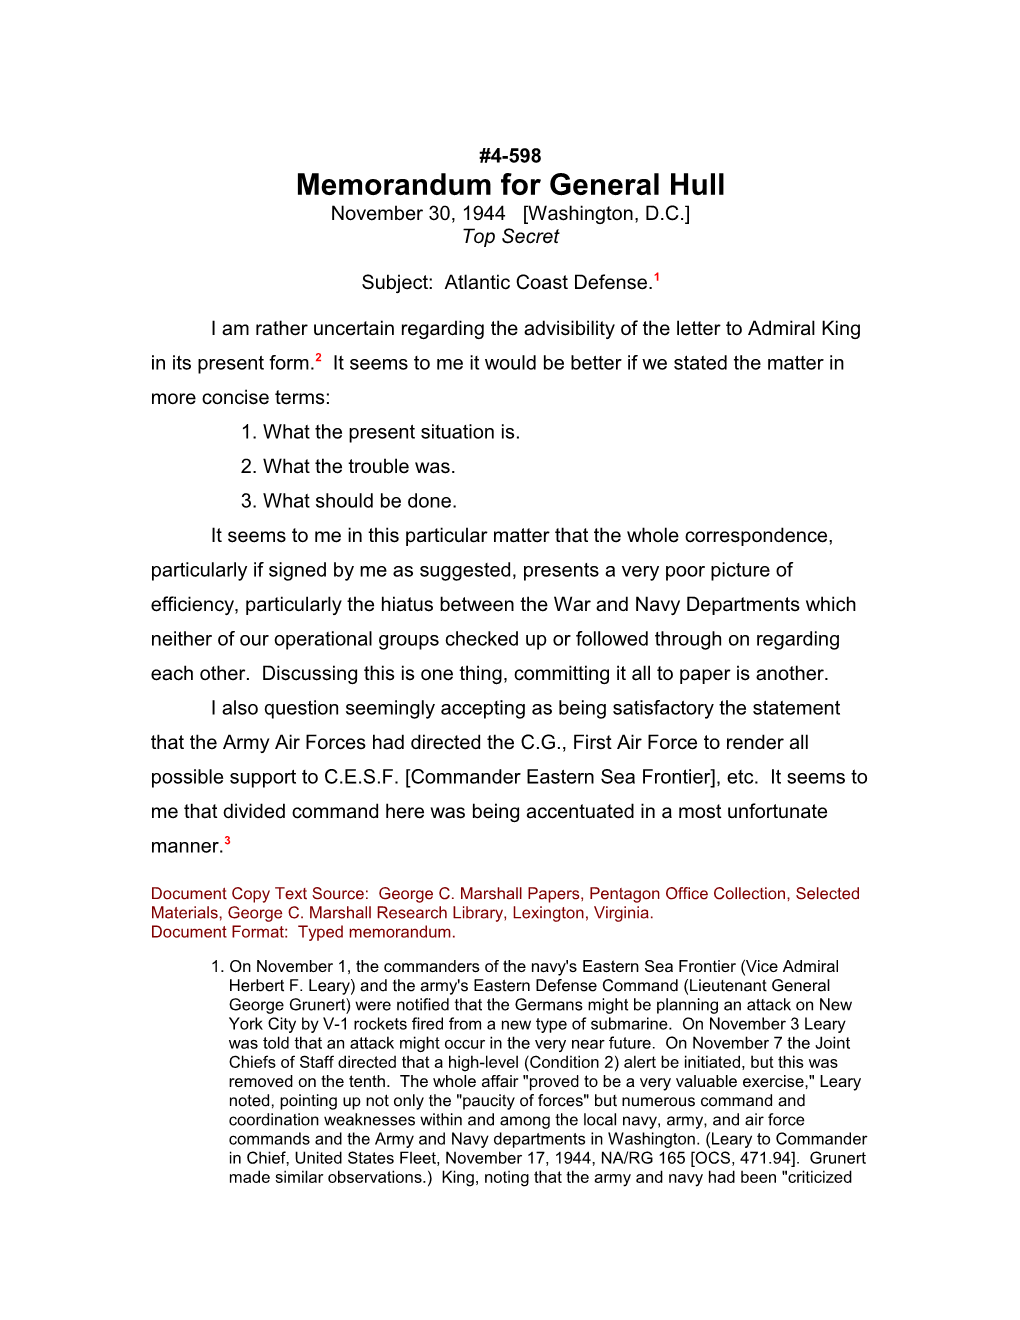 Memorandum for General Hull